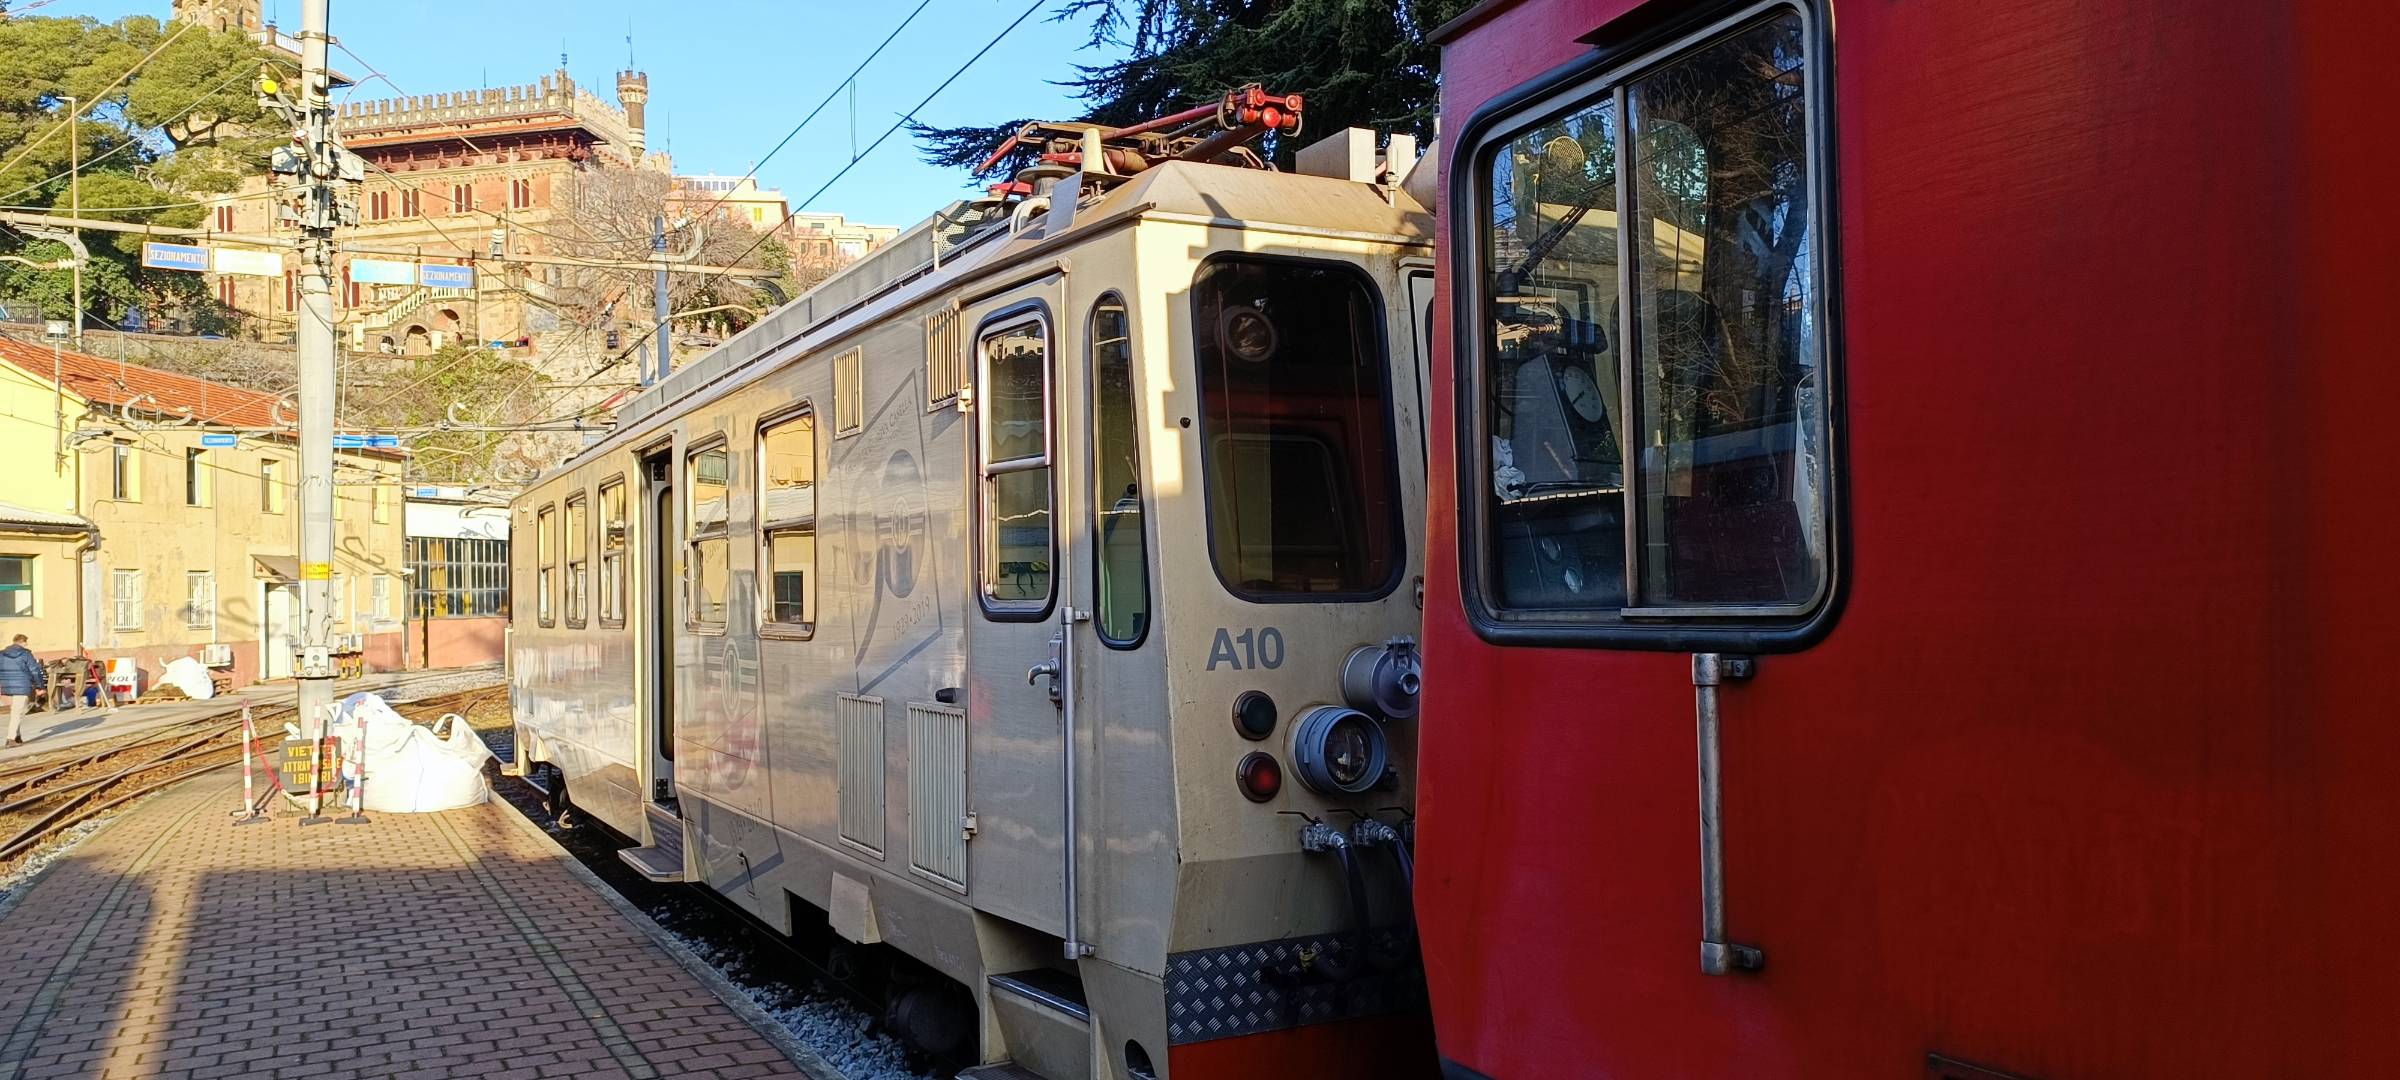 Amt Genova fa sapere che nei giorni 10 e 11 luglio il servizio della Ferrovia Genova Casella sarà interamente effettuato con bus sostitutivo.